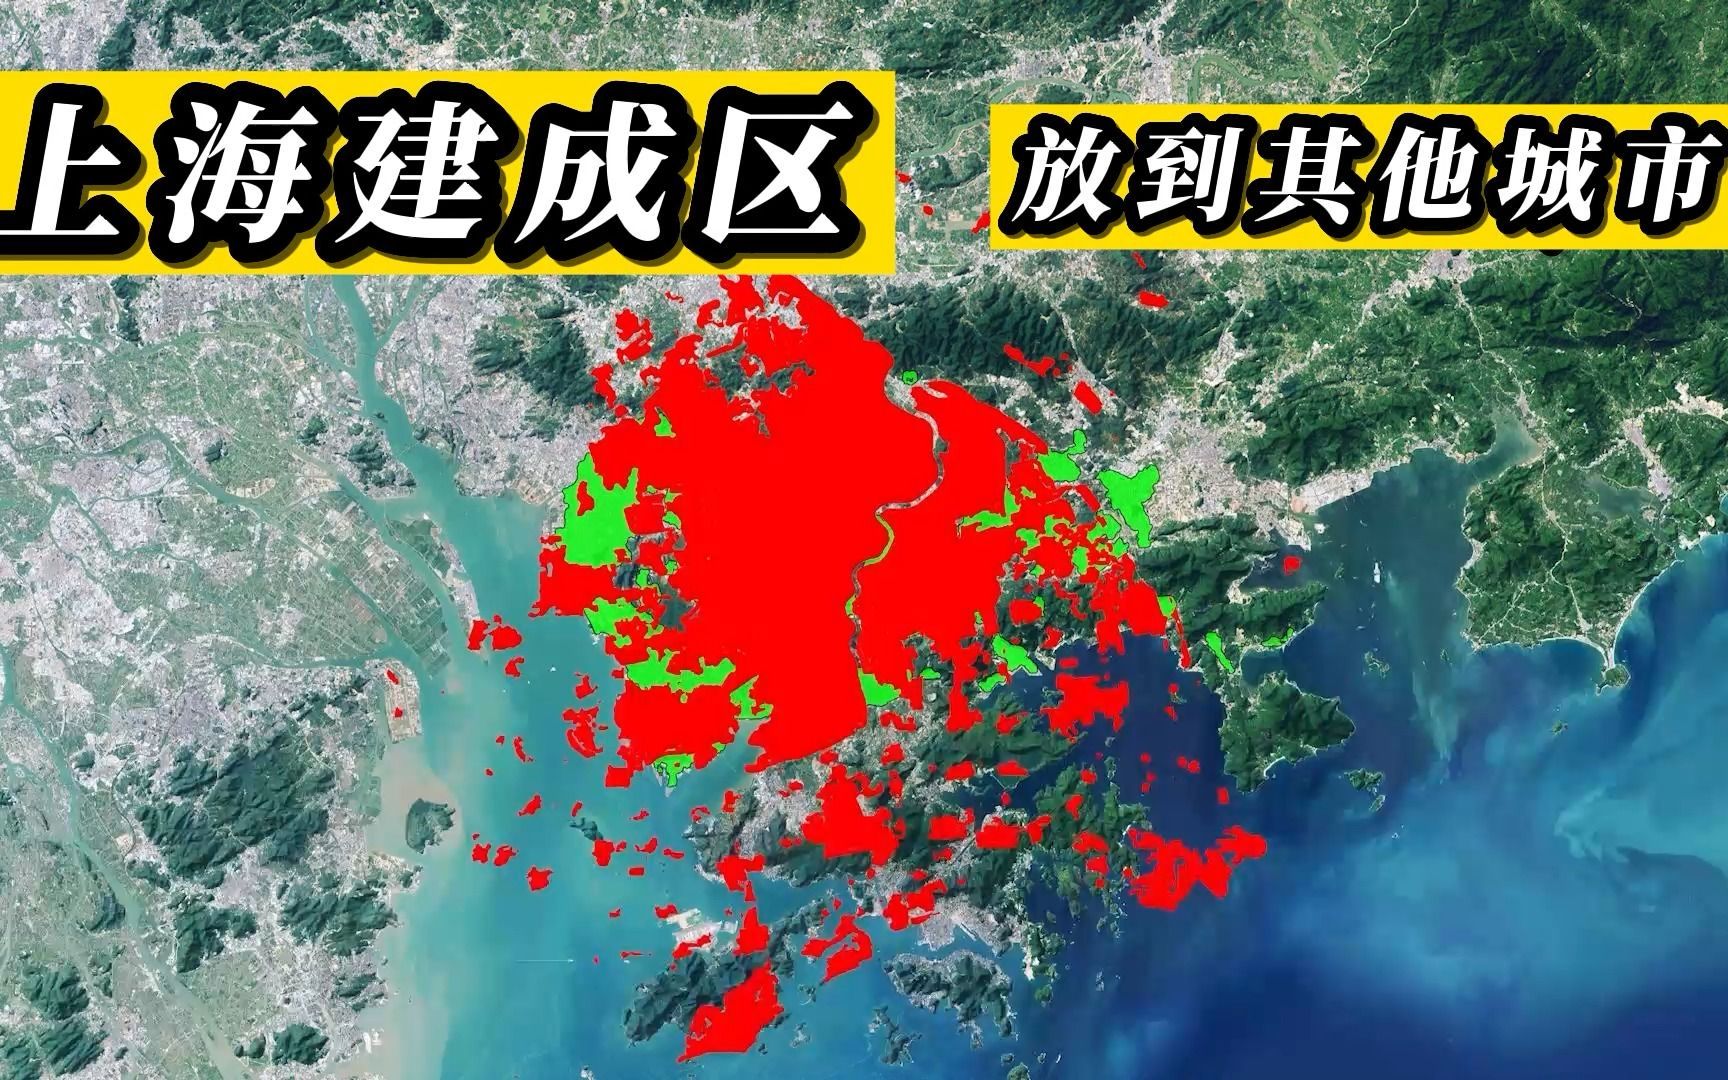 把上海建成区面积地图放到其他城市对比大小